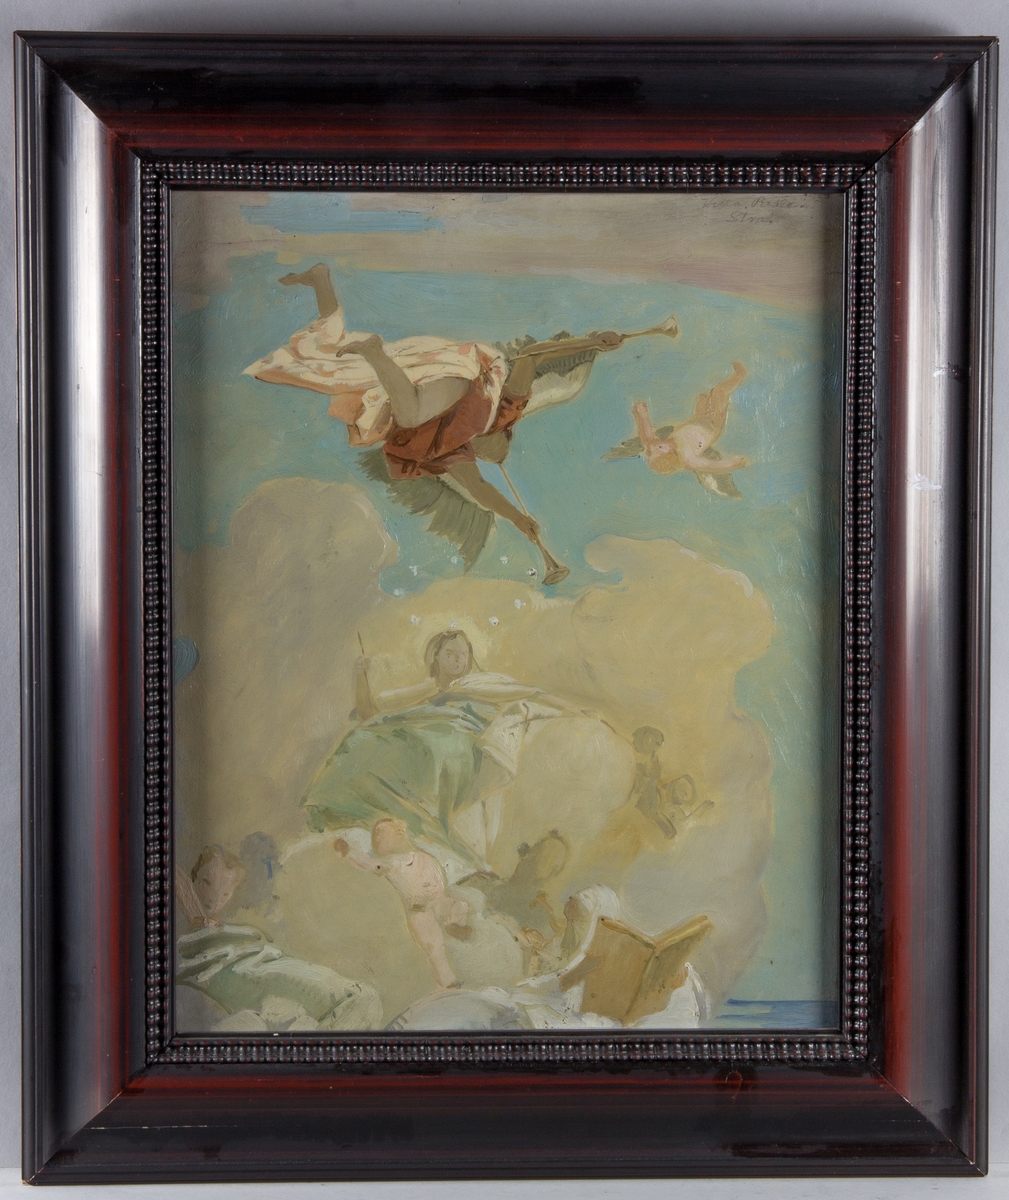 Skissartad skildring av patricierfamiljen Pisanis förhärligande i ljus färgskala. Överst flyger en bevingad figur med två lurar. Under denna ett flertal figurer, barn och vuxna, mot himmel och molnbakgrund. Detalj ur plafondmålning.